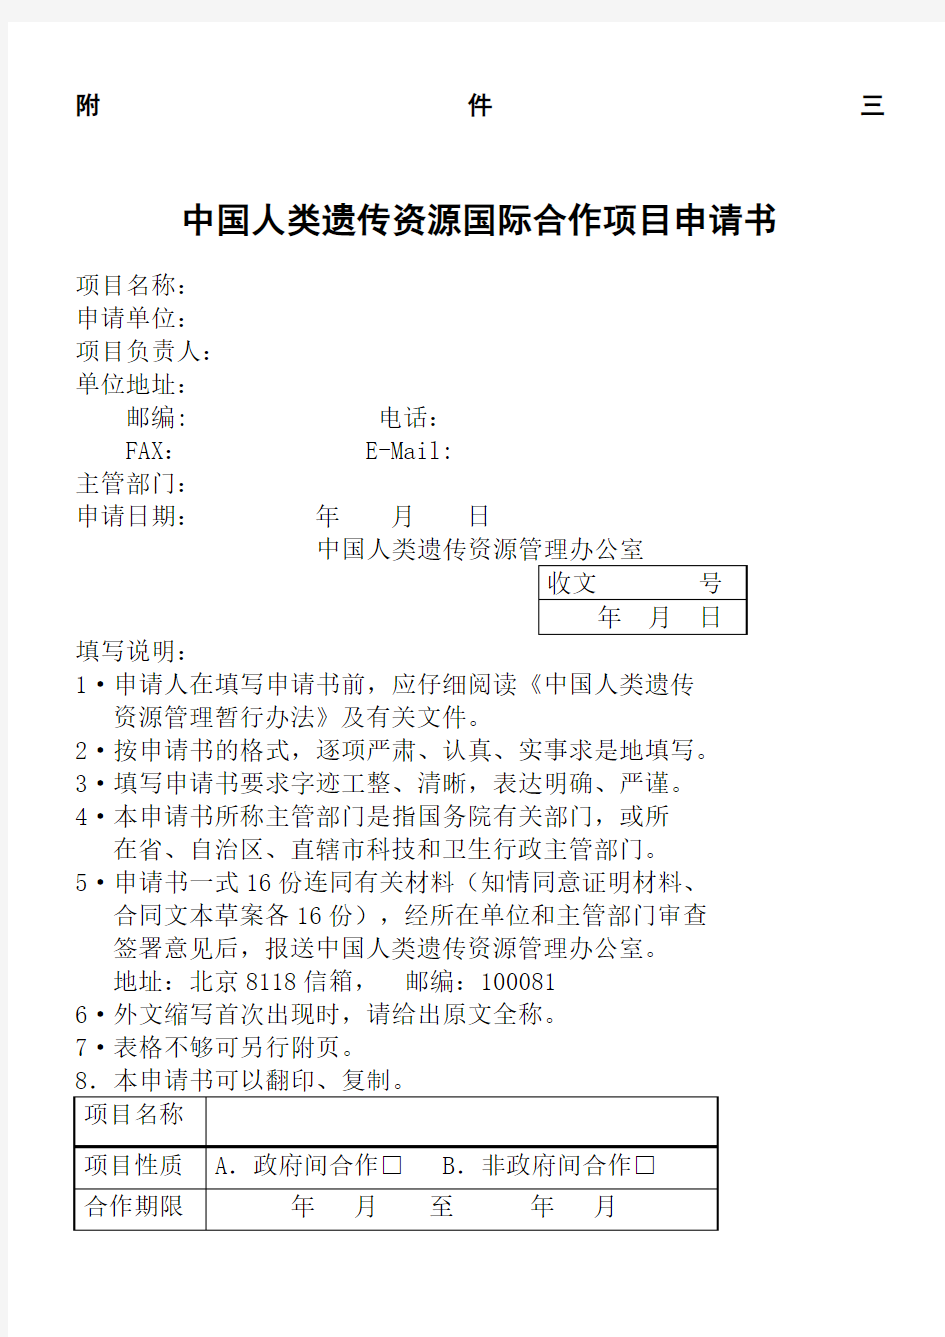 中国人类遗传资源国际合作项目申请书